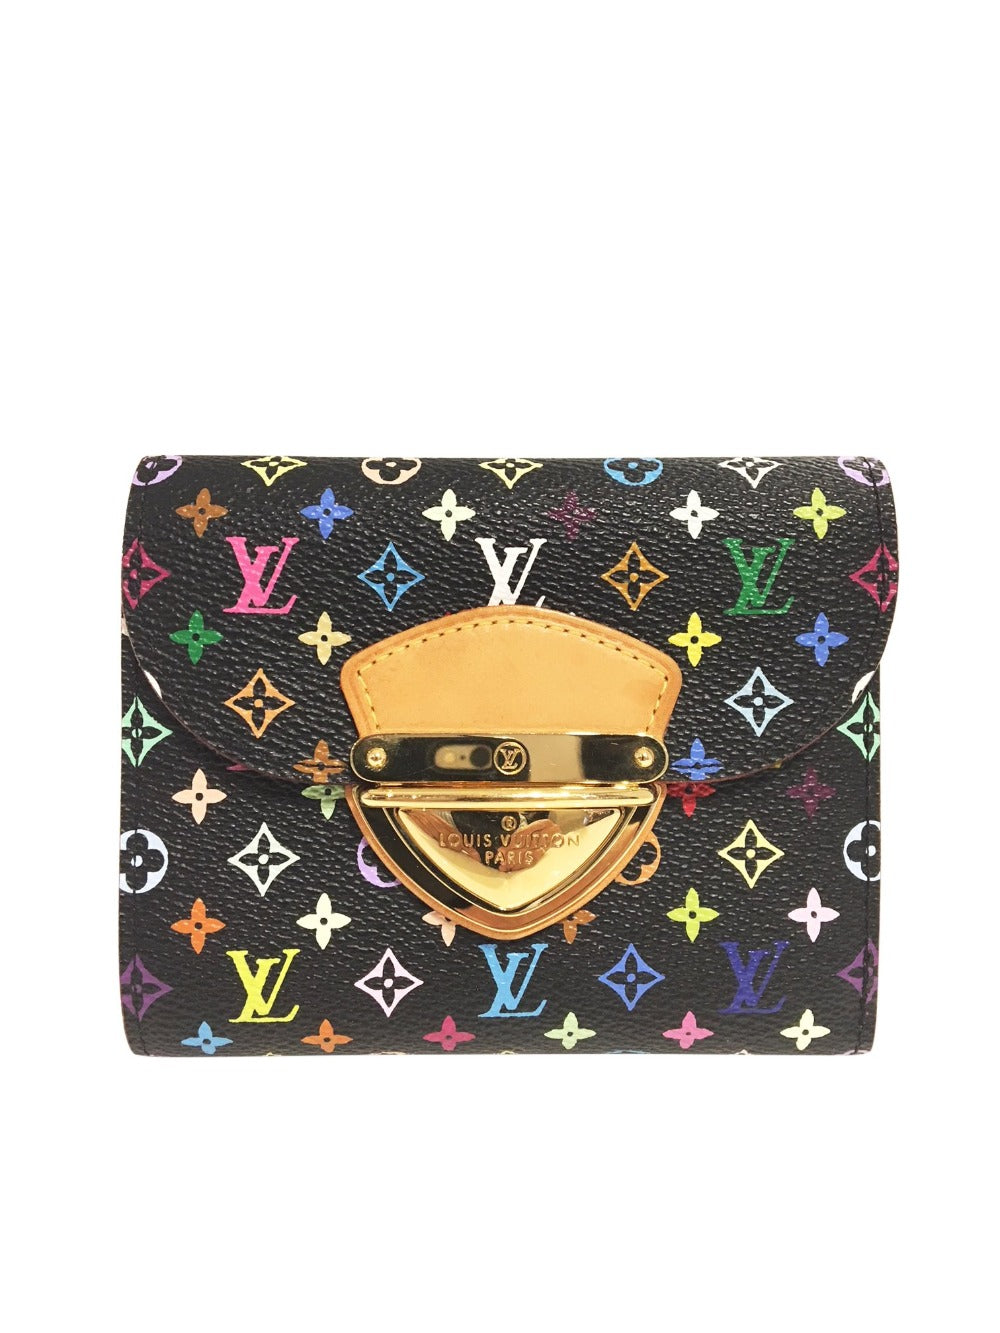 Louis Vuitton Takashi Murakami Wallet